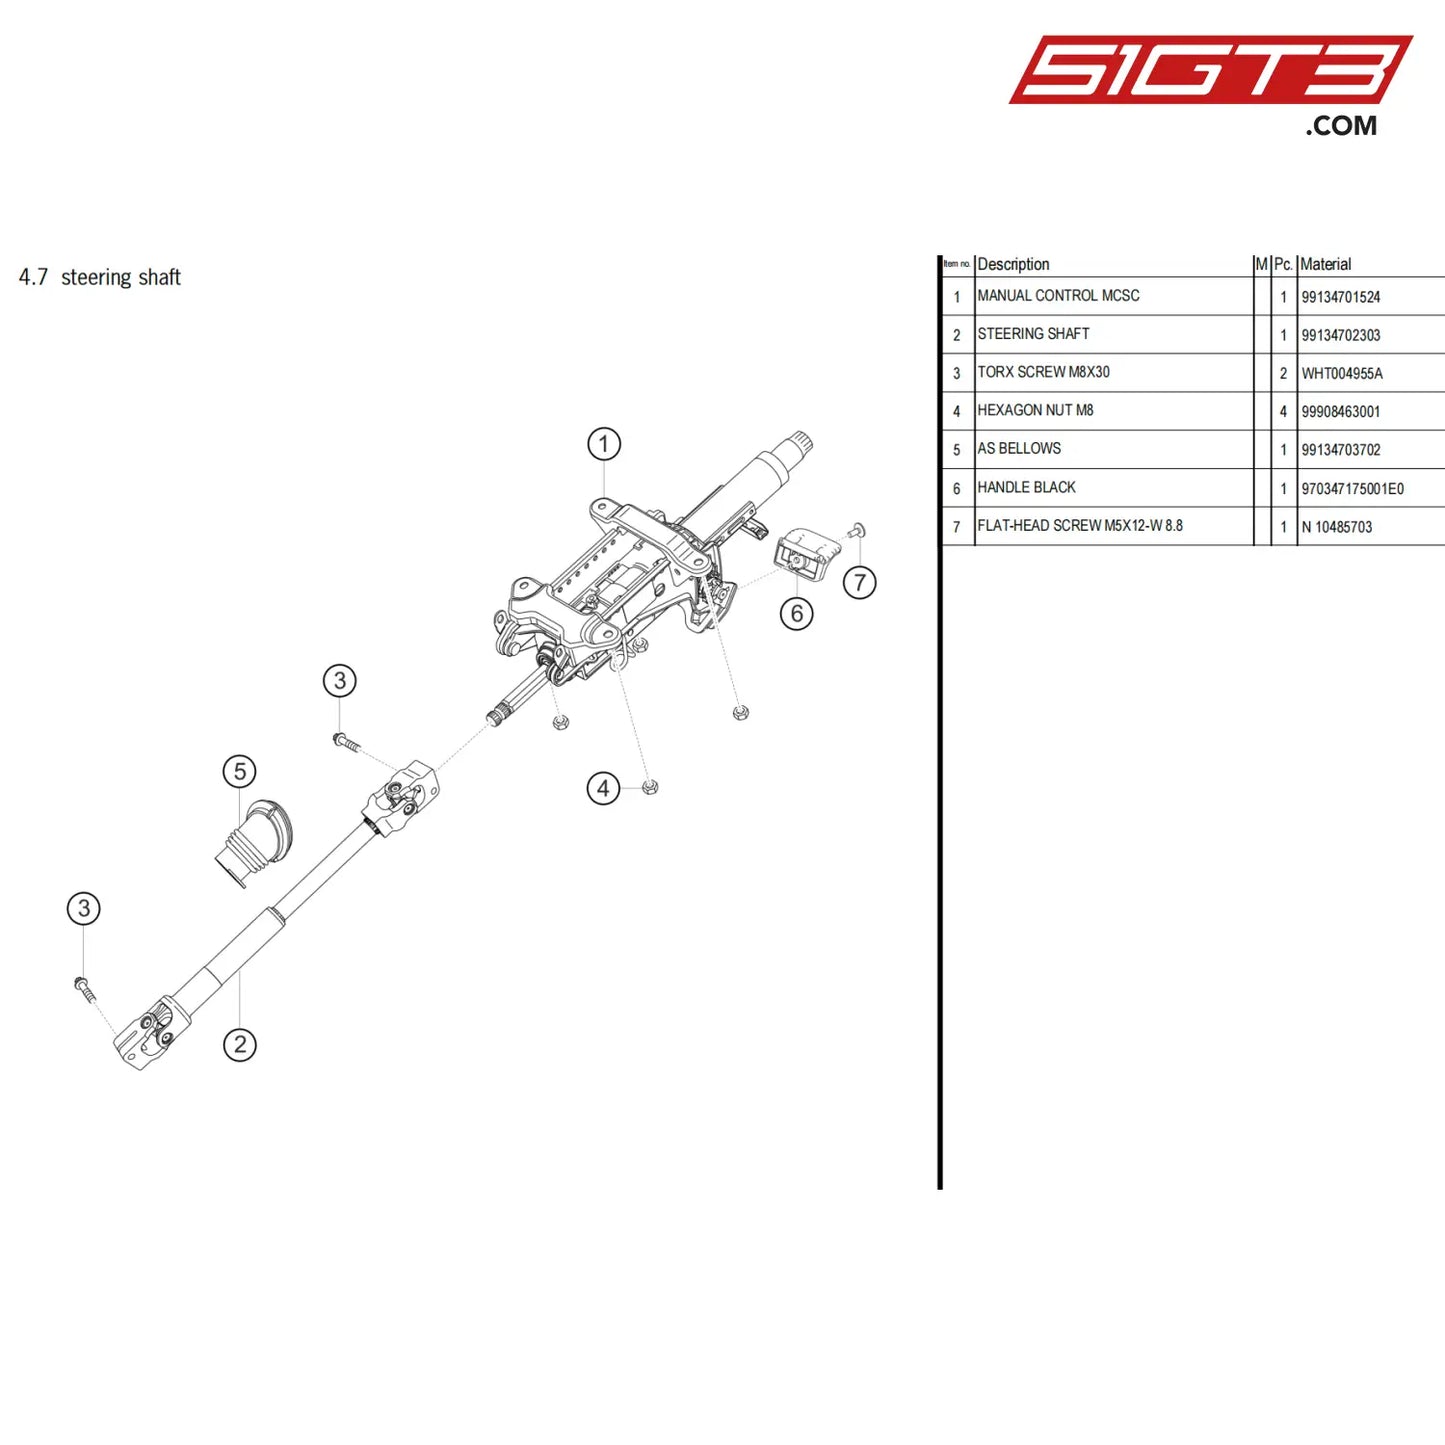 Manual Control Mcsc - 99134701524 [Porsche 718 Cayman Gt4 Clubsport] Steering Shaft